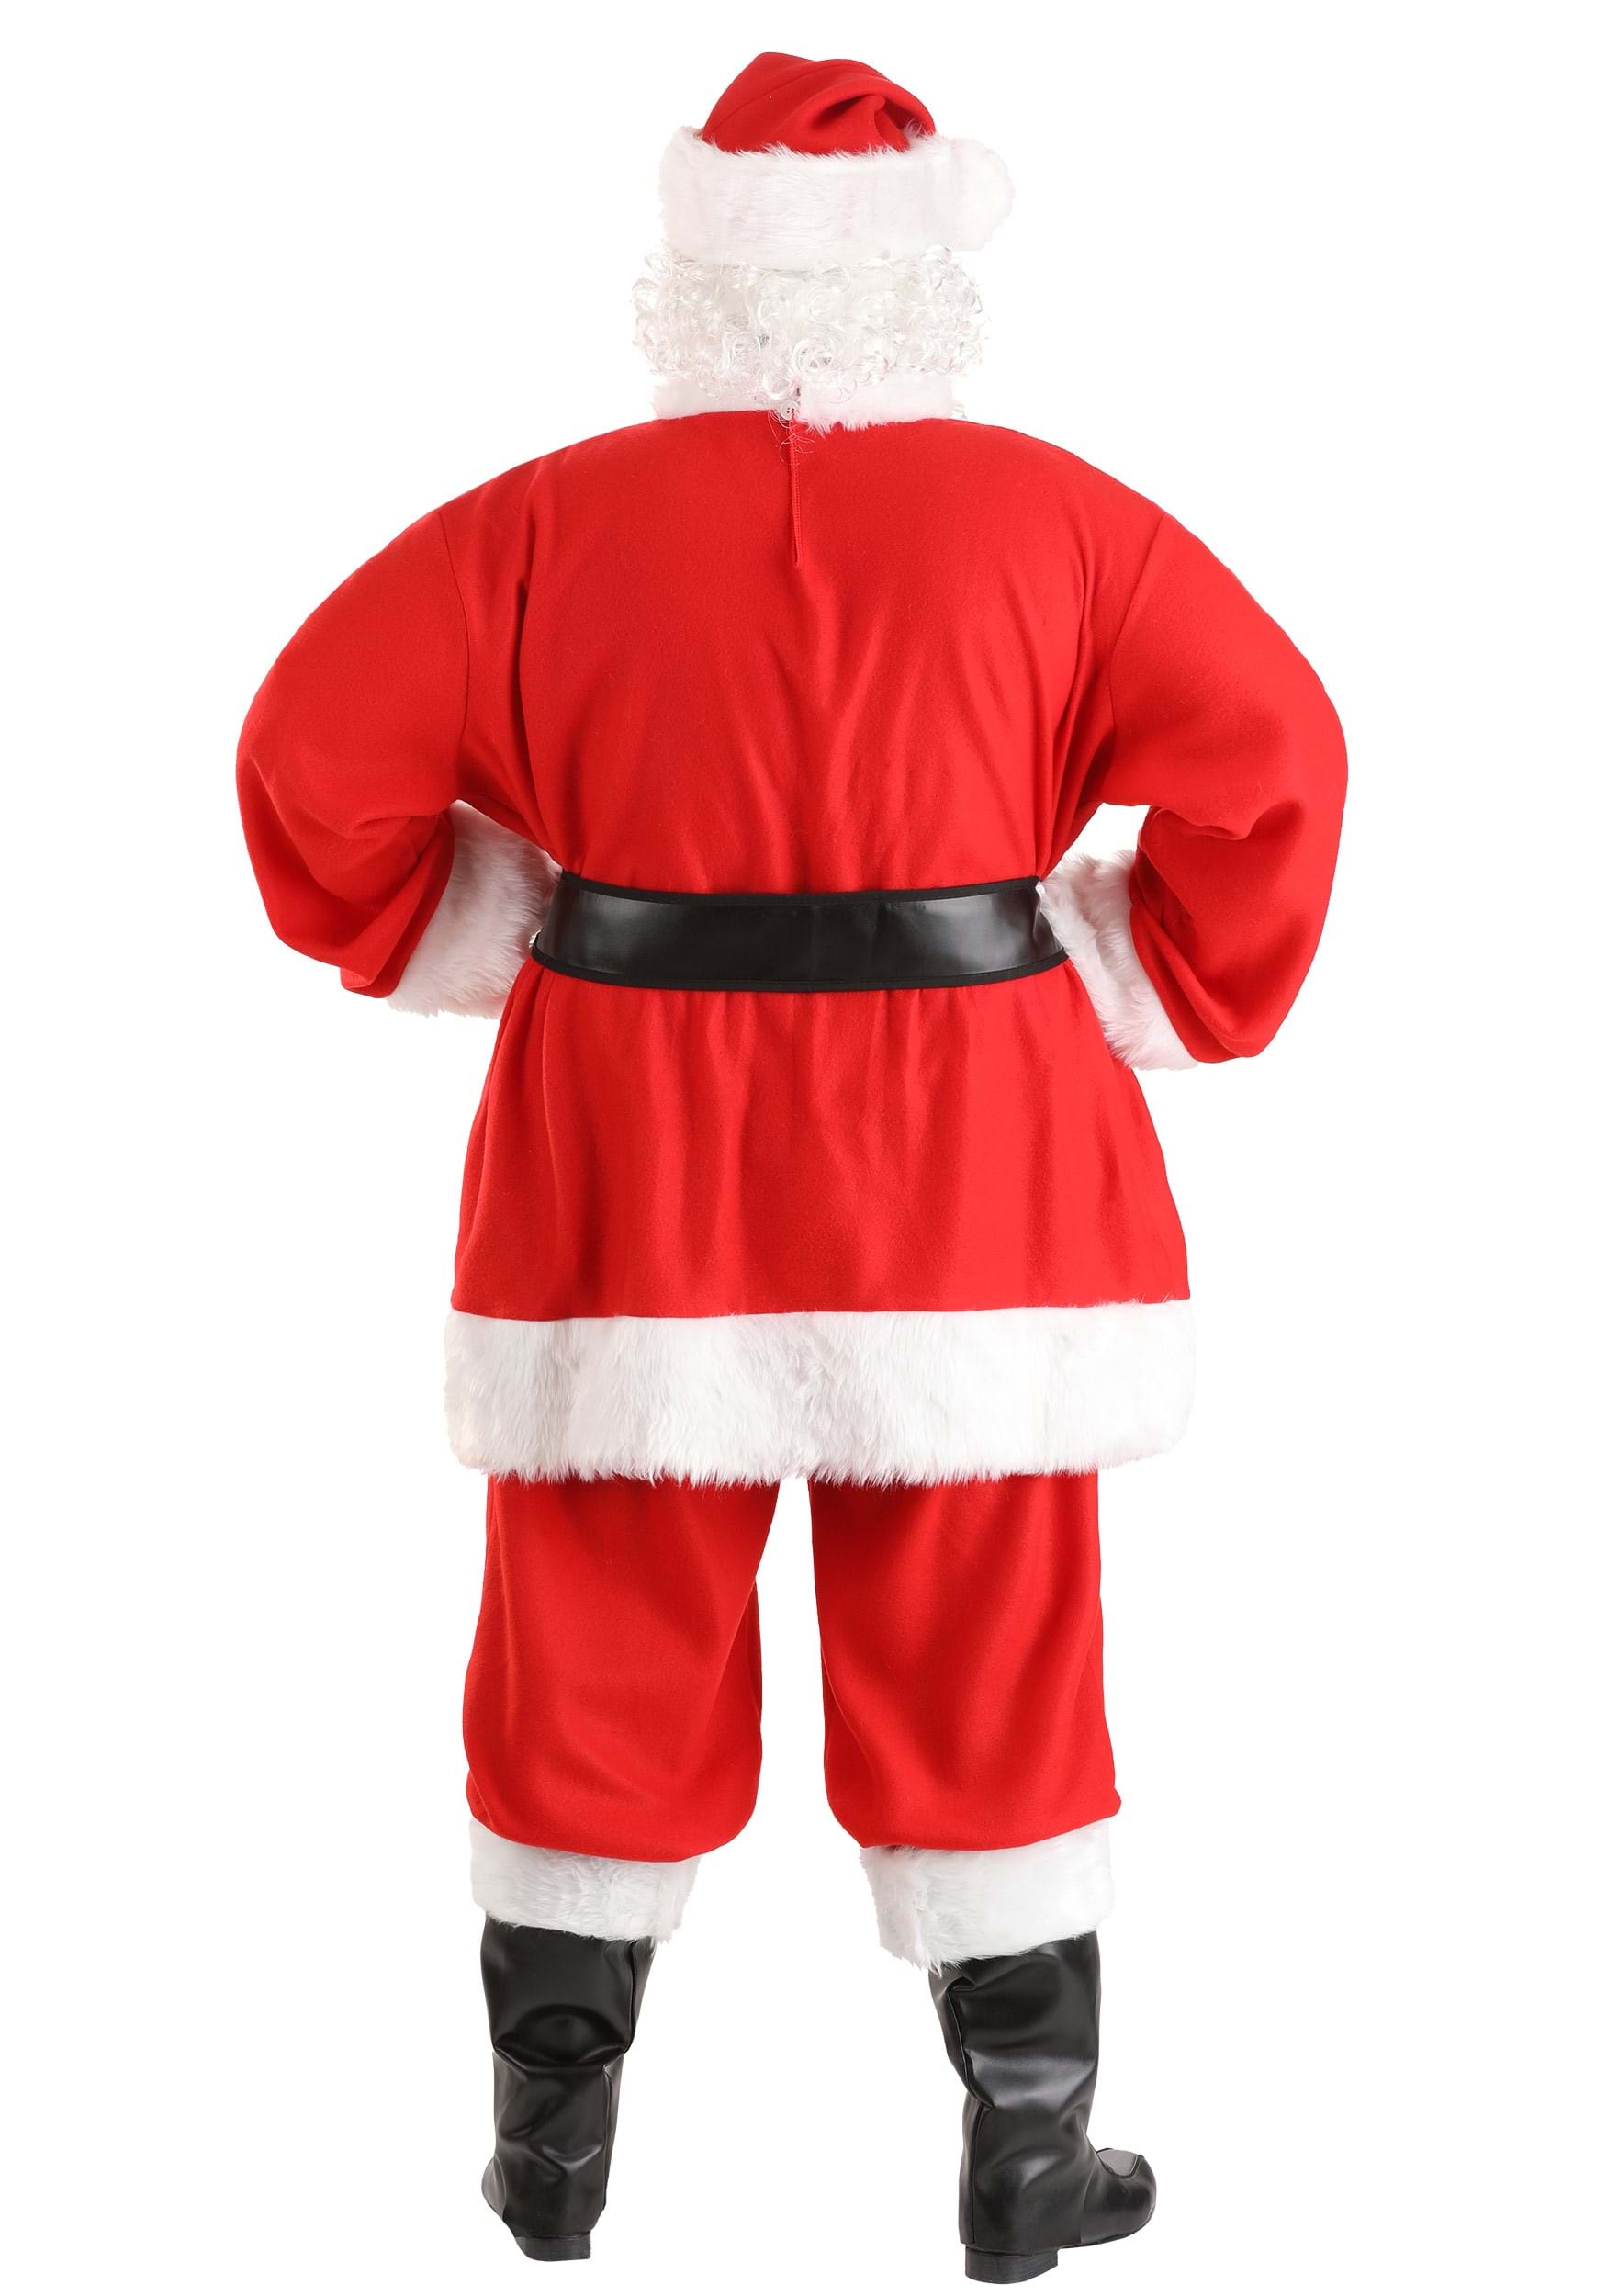 Plus Size Men's Holiday Santa Claus Fancy Dress Costume